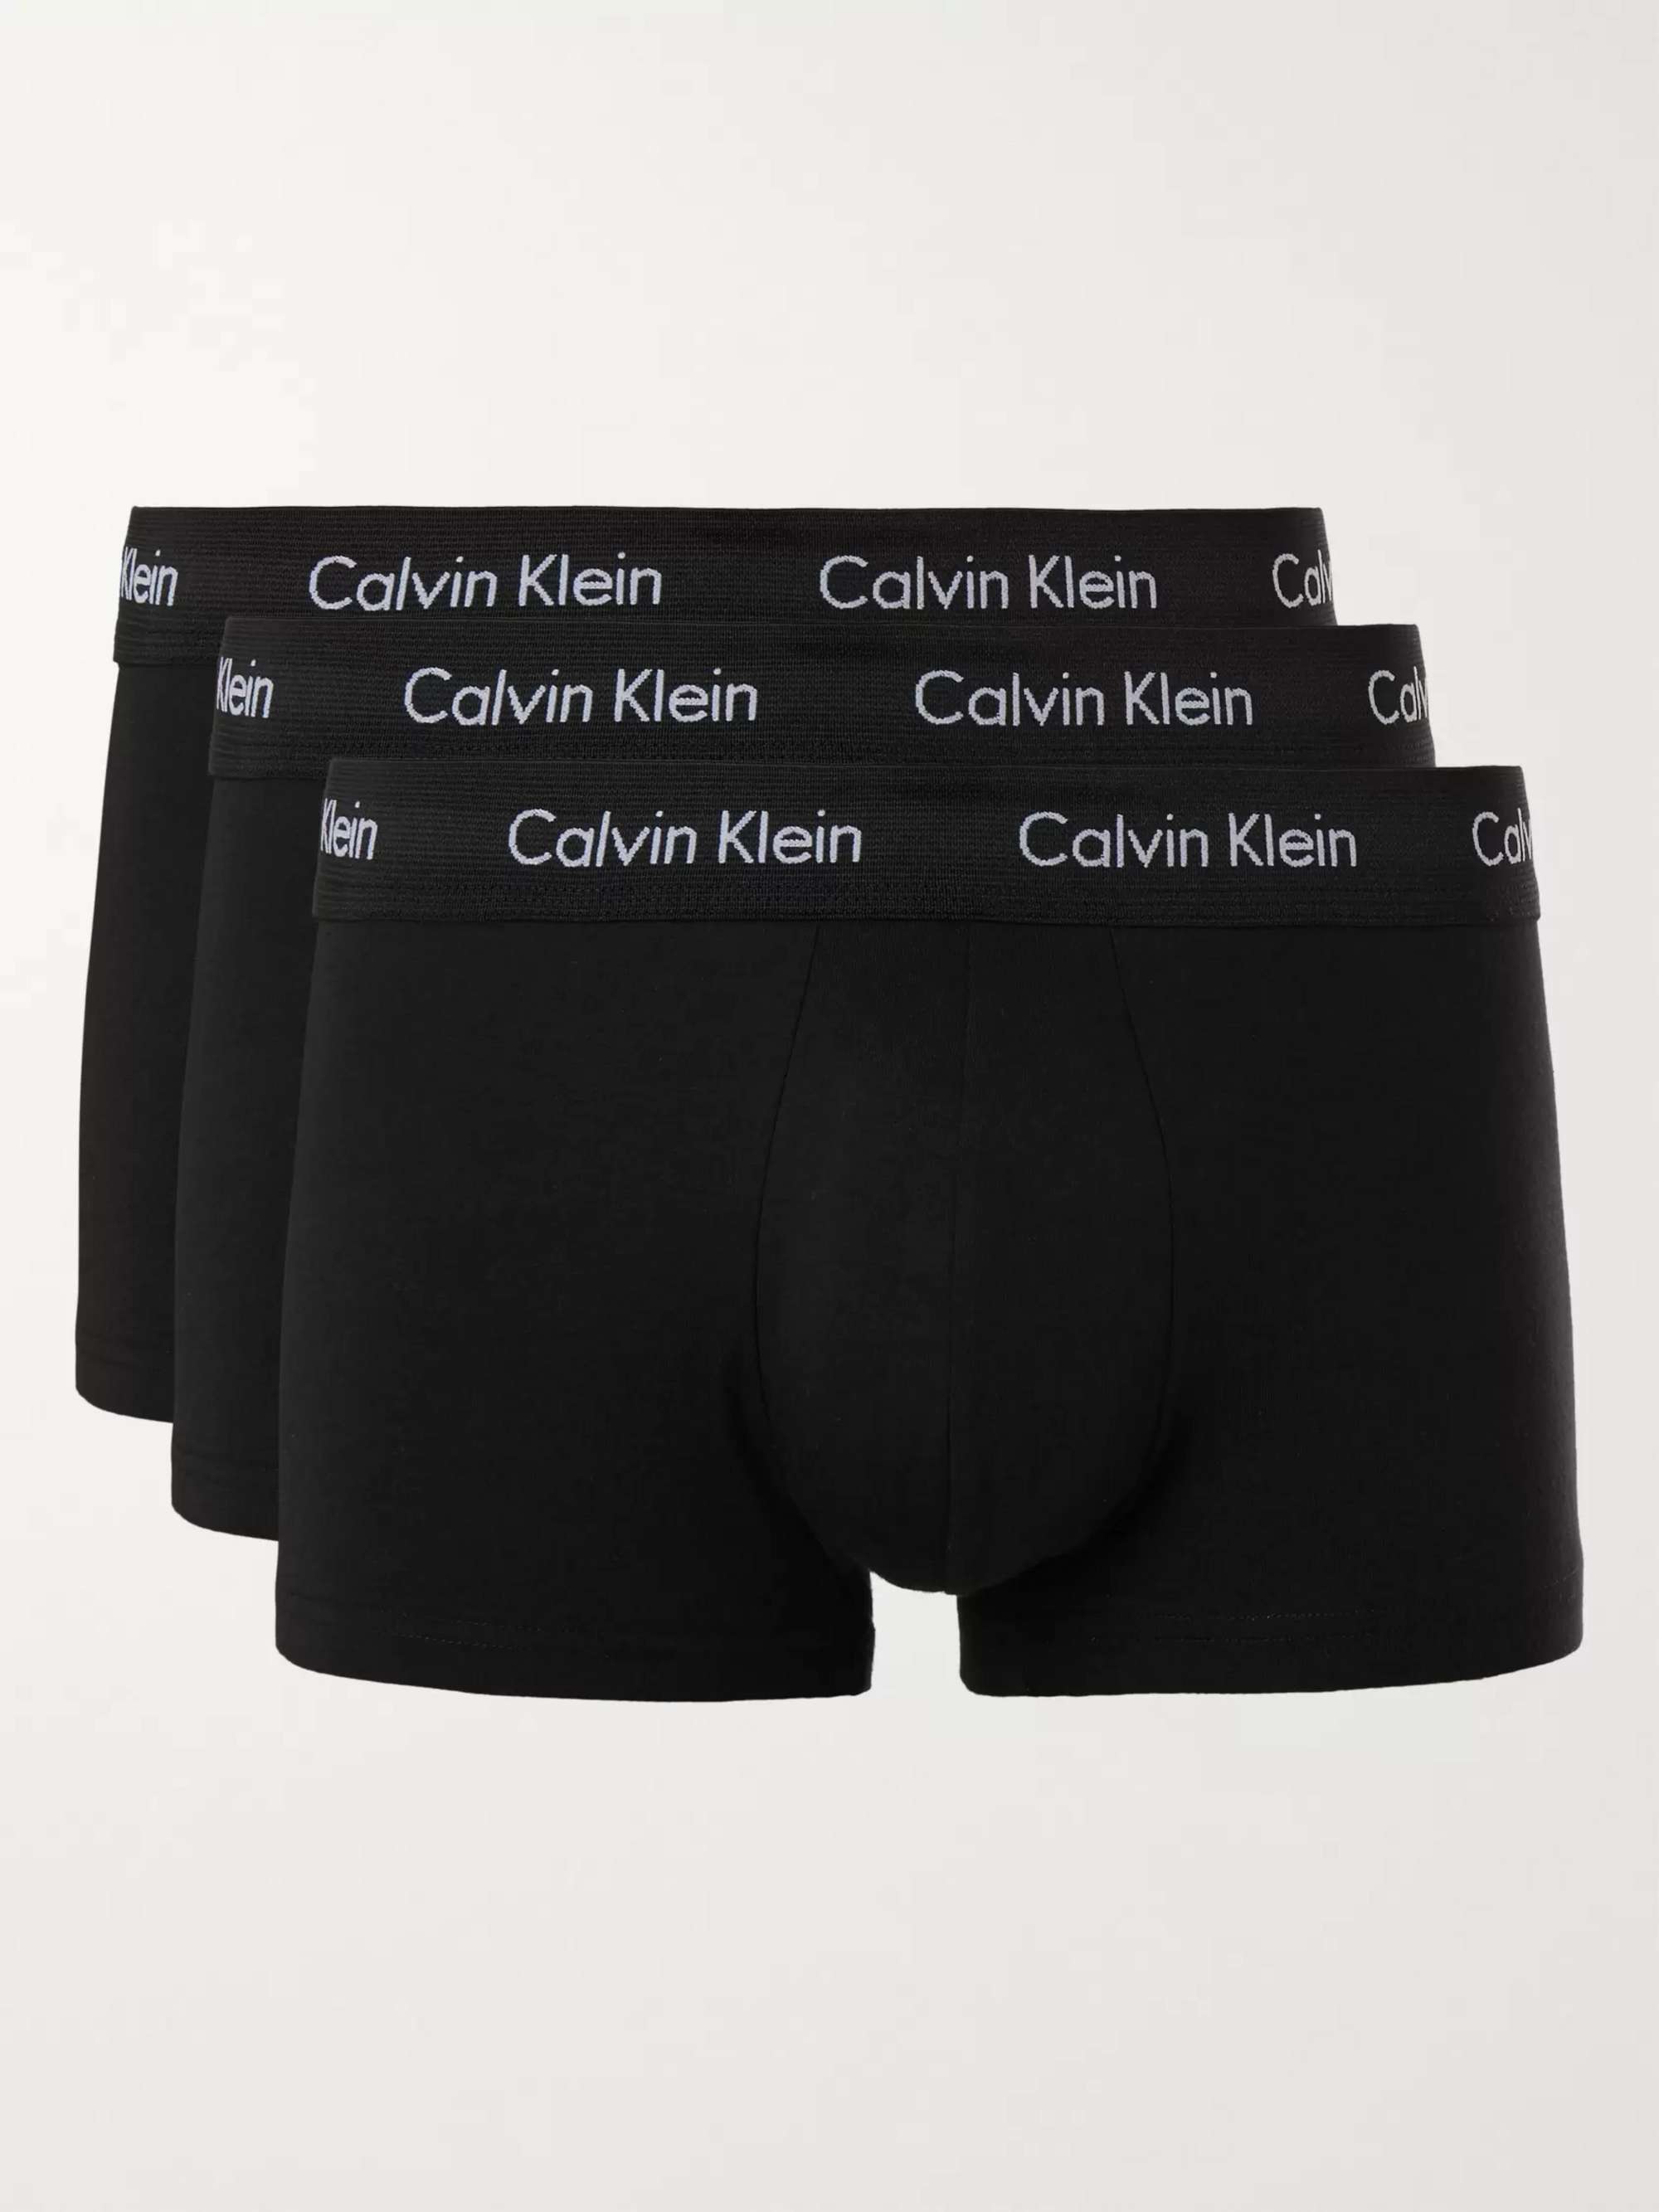 CALVIN KLEIN Three-Pack Stretch-Cotton Boxer Briefs for Men | MR PORTER